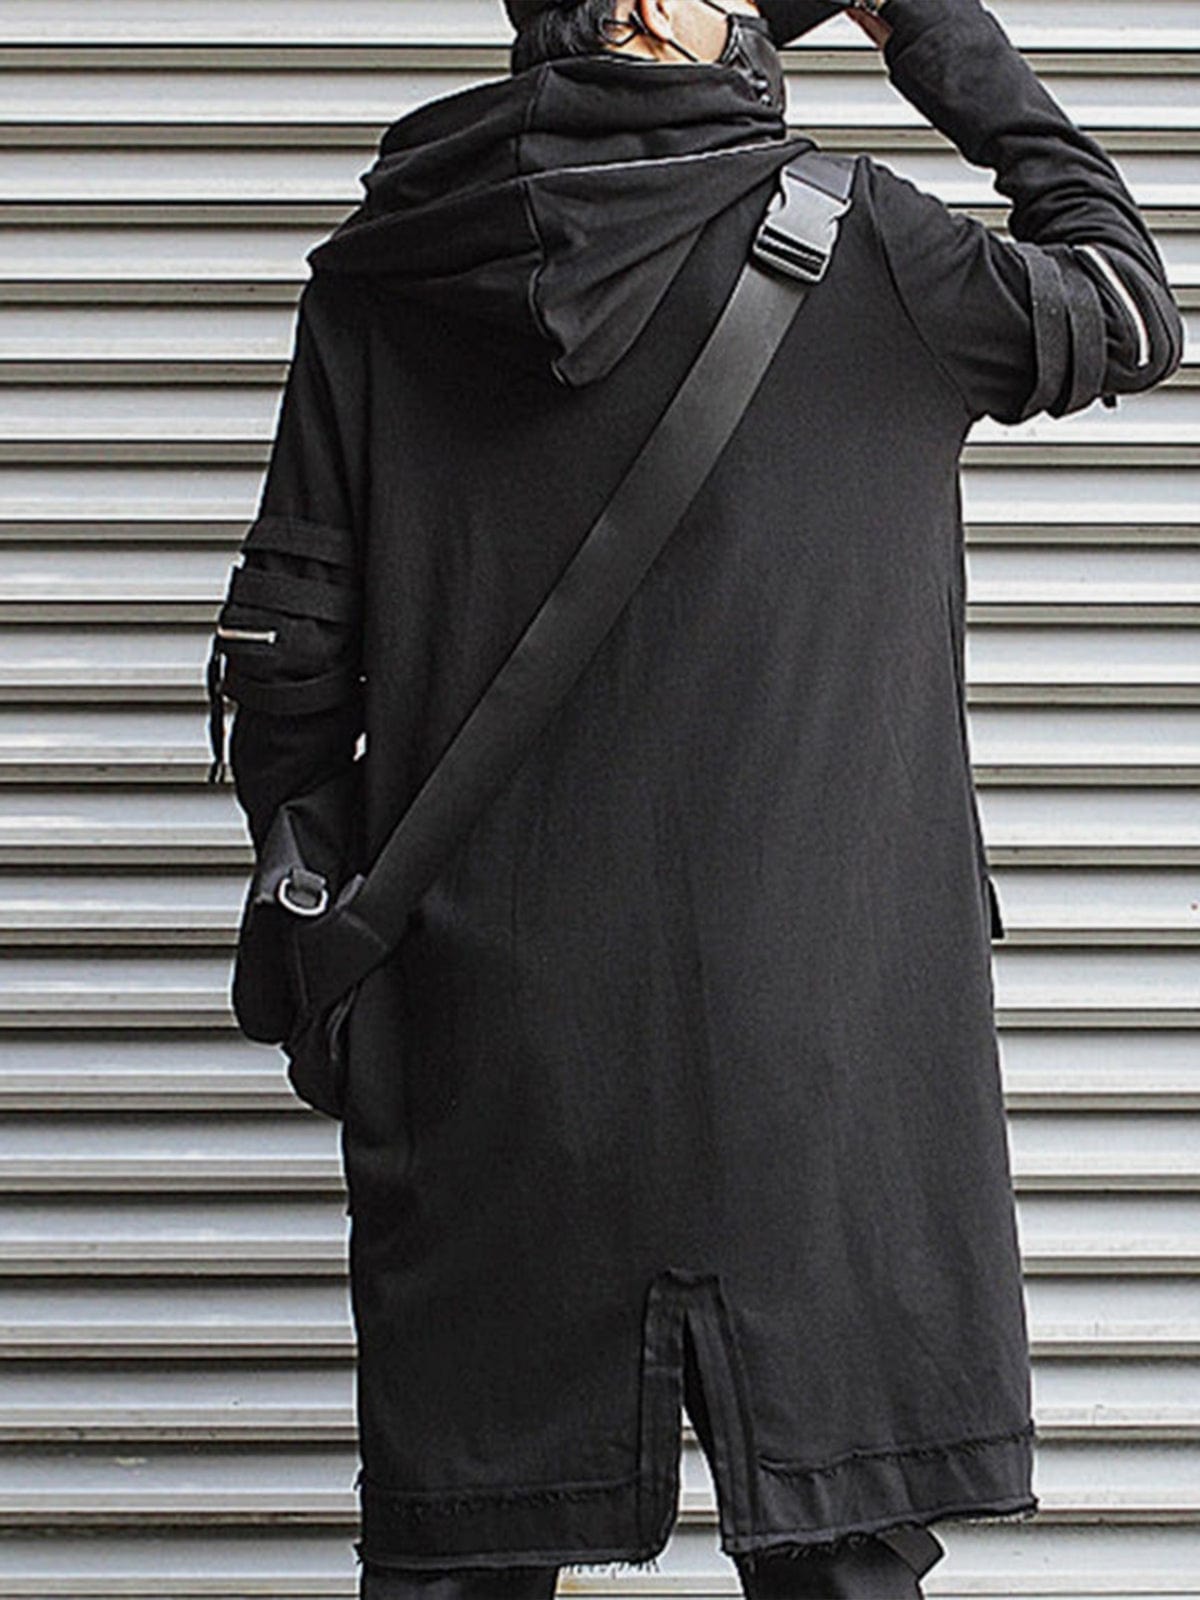 Dark Wizard Cloak Double Hooded Coat Streetwear Brand Techwear Combat Tactical YUGEN THEORY